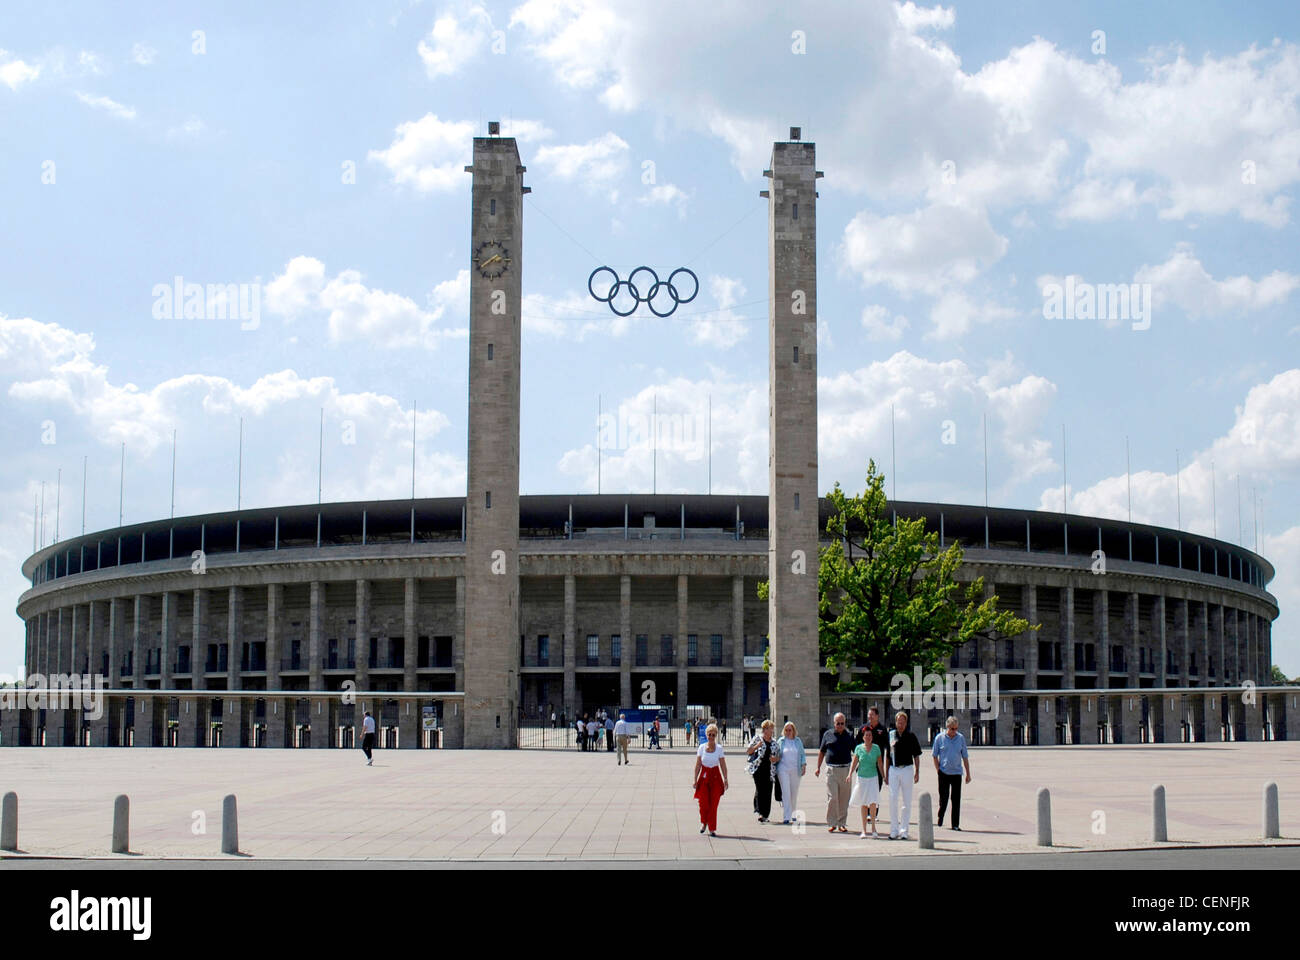 Estadio Olímpico de Berlín con los anillos olímpicos sobre la entrada principal. Foto de stock